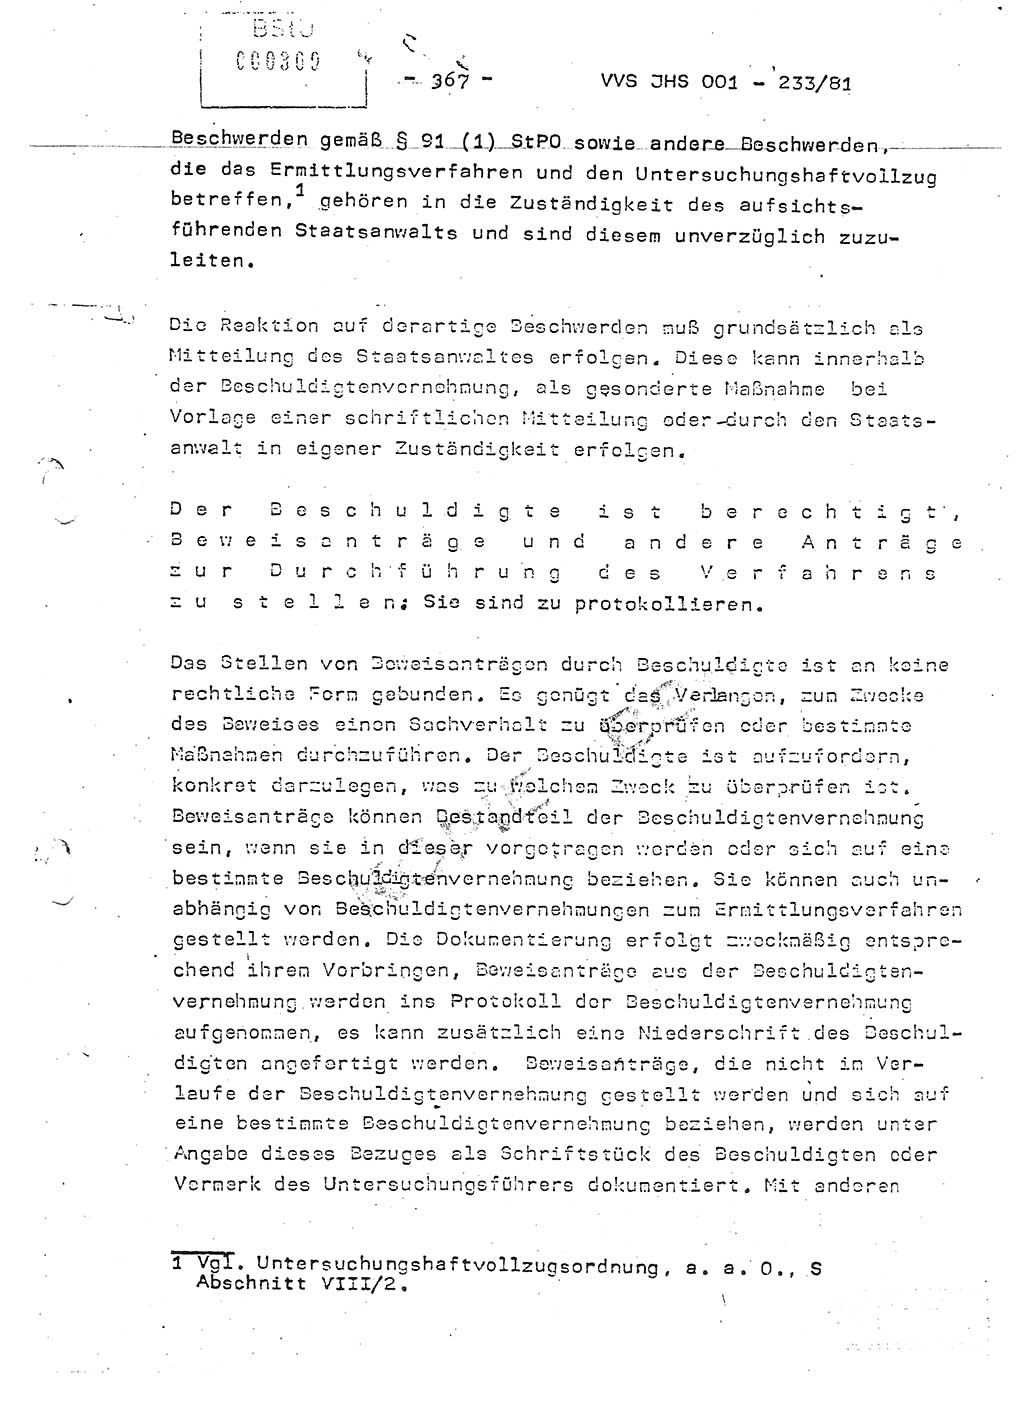 Dissertation Oberstleutnant Horst Zank (JHS), Oberstleutnant Dr. Karl-Heinz Knoblauch (JHS), Oberstleutnant Gustav-Adolf Kowalewski (HA Ⅸ), Oberstleutnant Wolfgang Plötner (HA Ⅸ), Ministerium für Staatssicherheit (MfS) [Deutsche Demokratische Republik (DDR)], Juristische Hochschule (JHS), Vertrauliche Verschlußsache (VVS) o001-233/81, Potsdam 1981, Blatt 367 (Diss. MfS DDR JHS VVS o001-233/81 1981, Bl. 367)